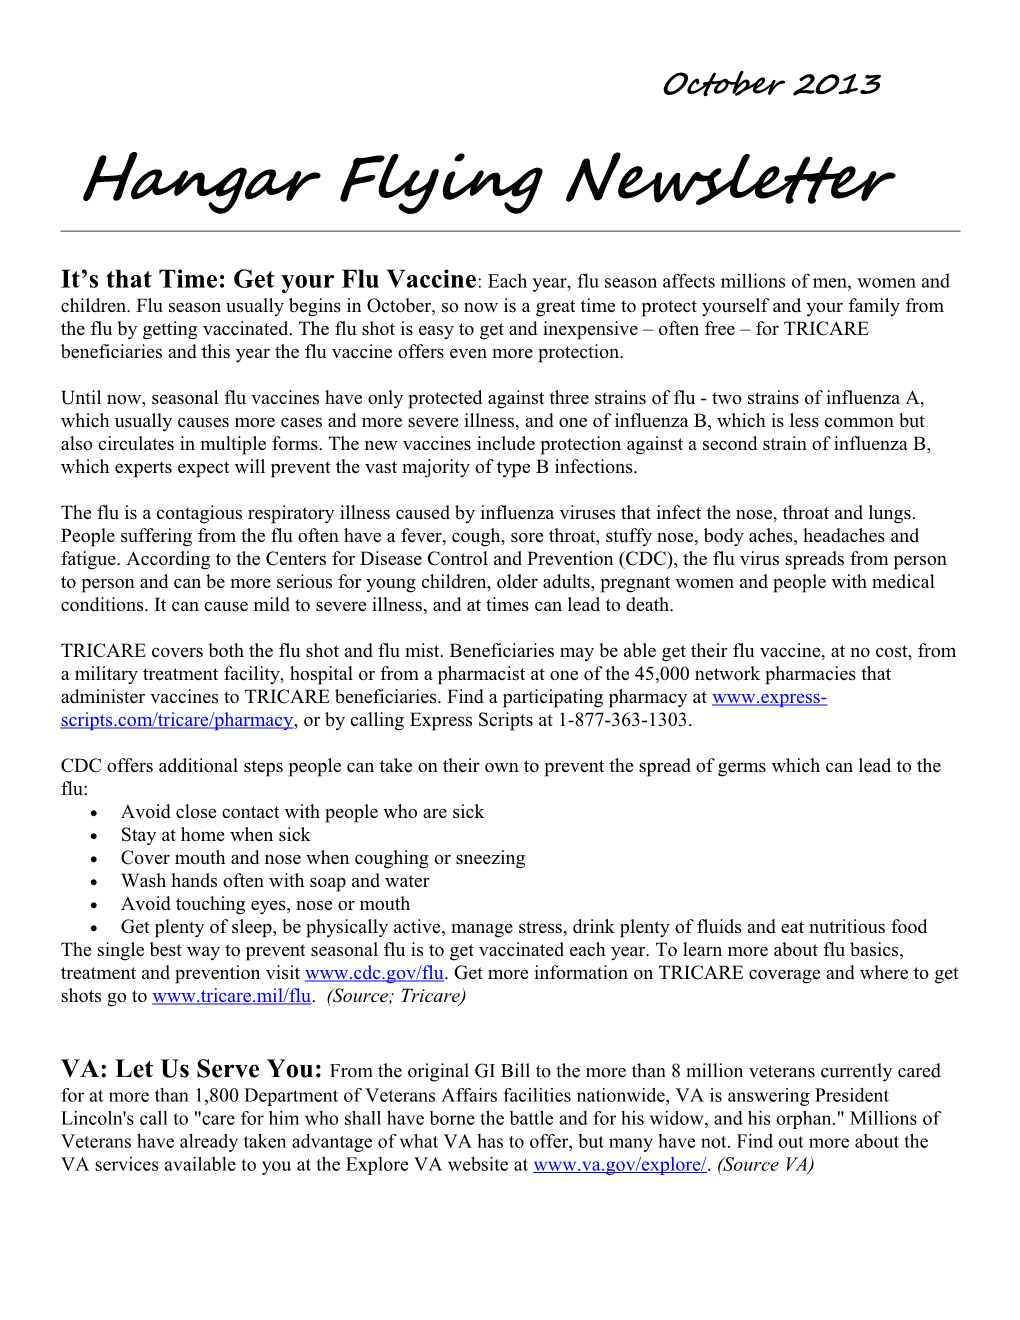 Hangar Flying Newsletter